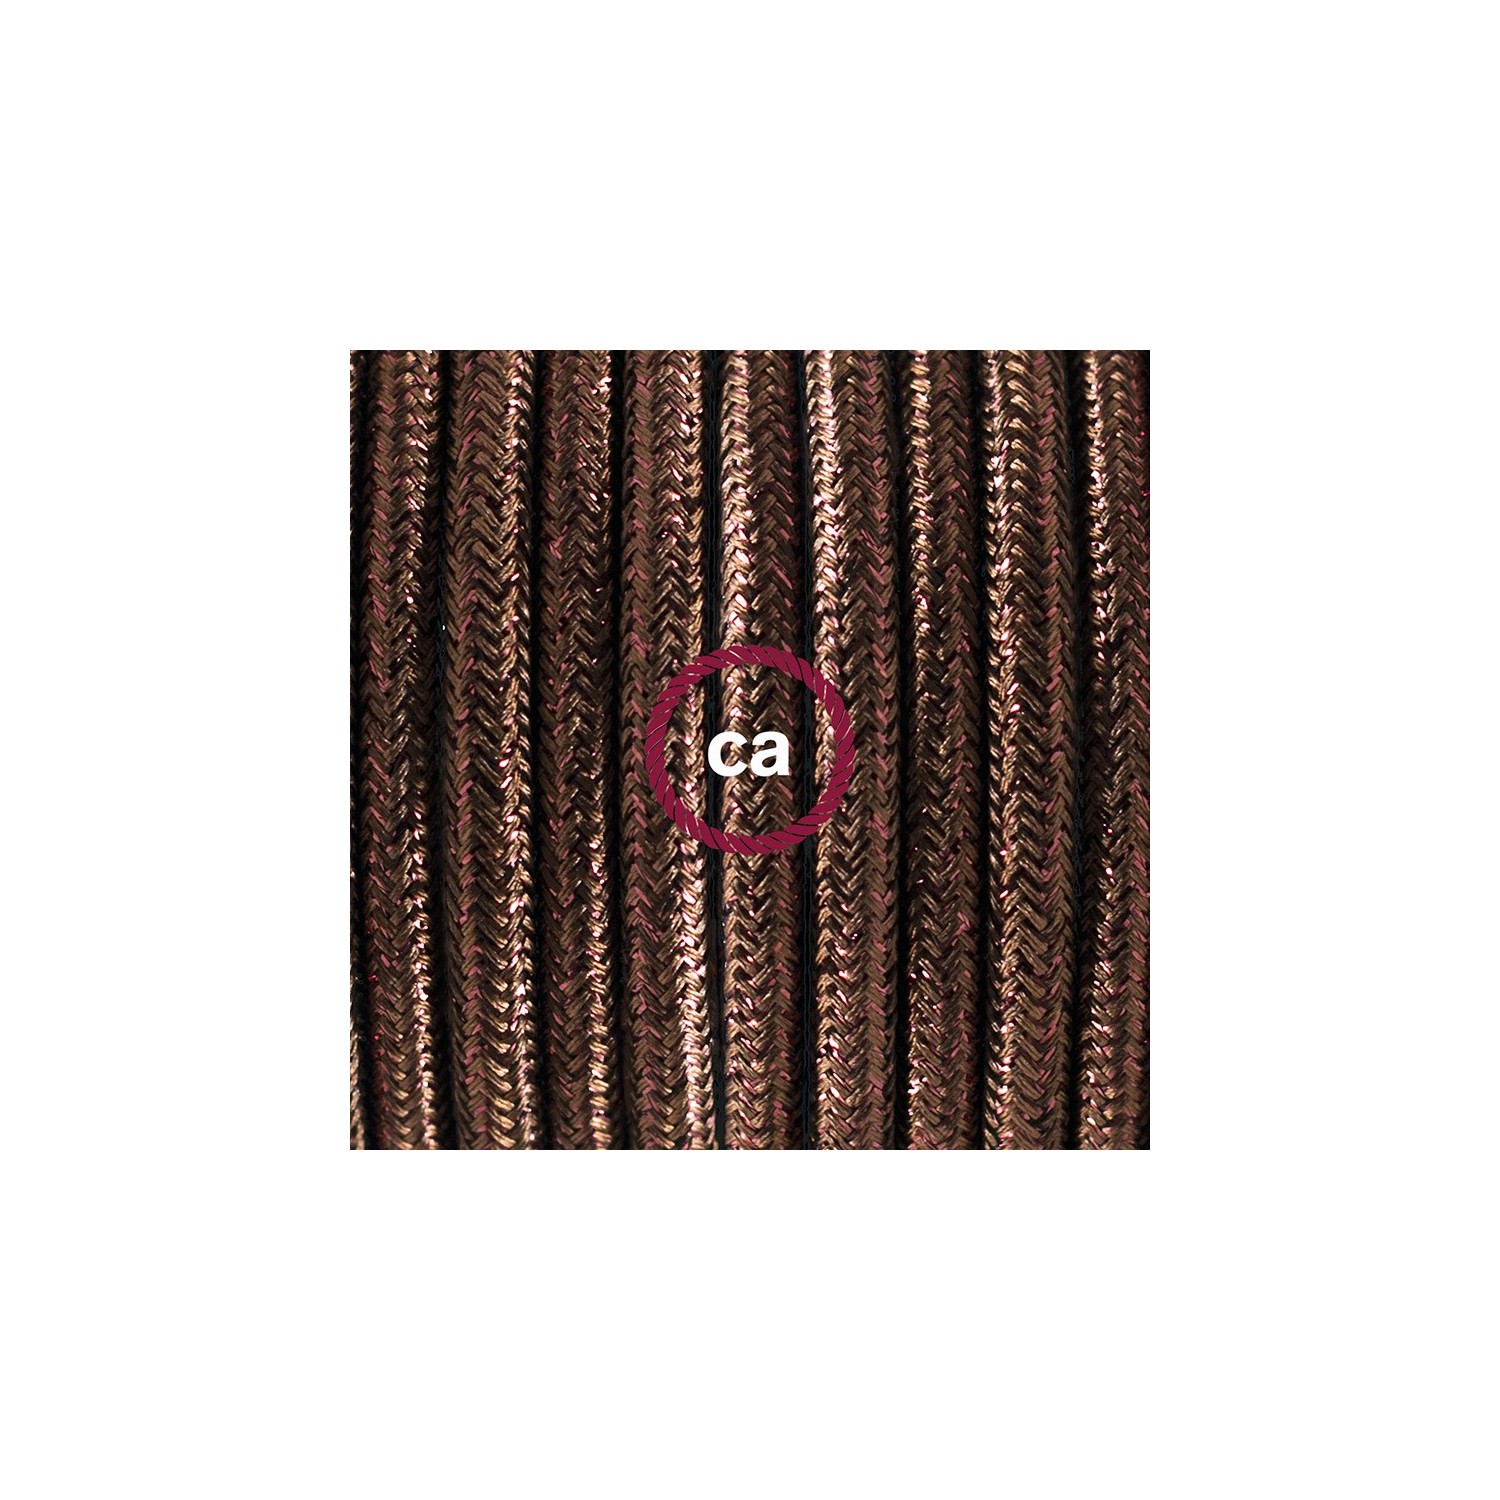 Ronde flexibele textielkabel van viscose met schakelaar en stekker.RL13 - lame (glinsterend) bruin 1,80 m.